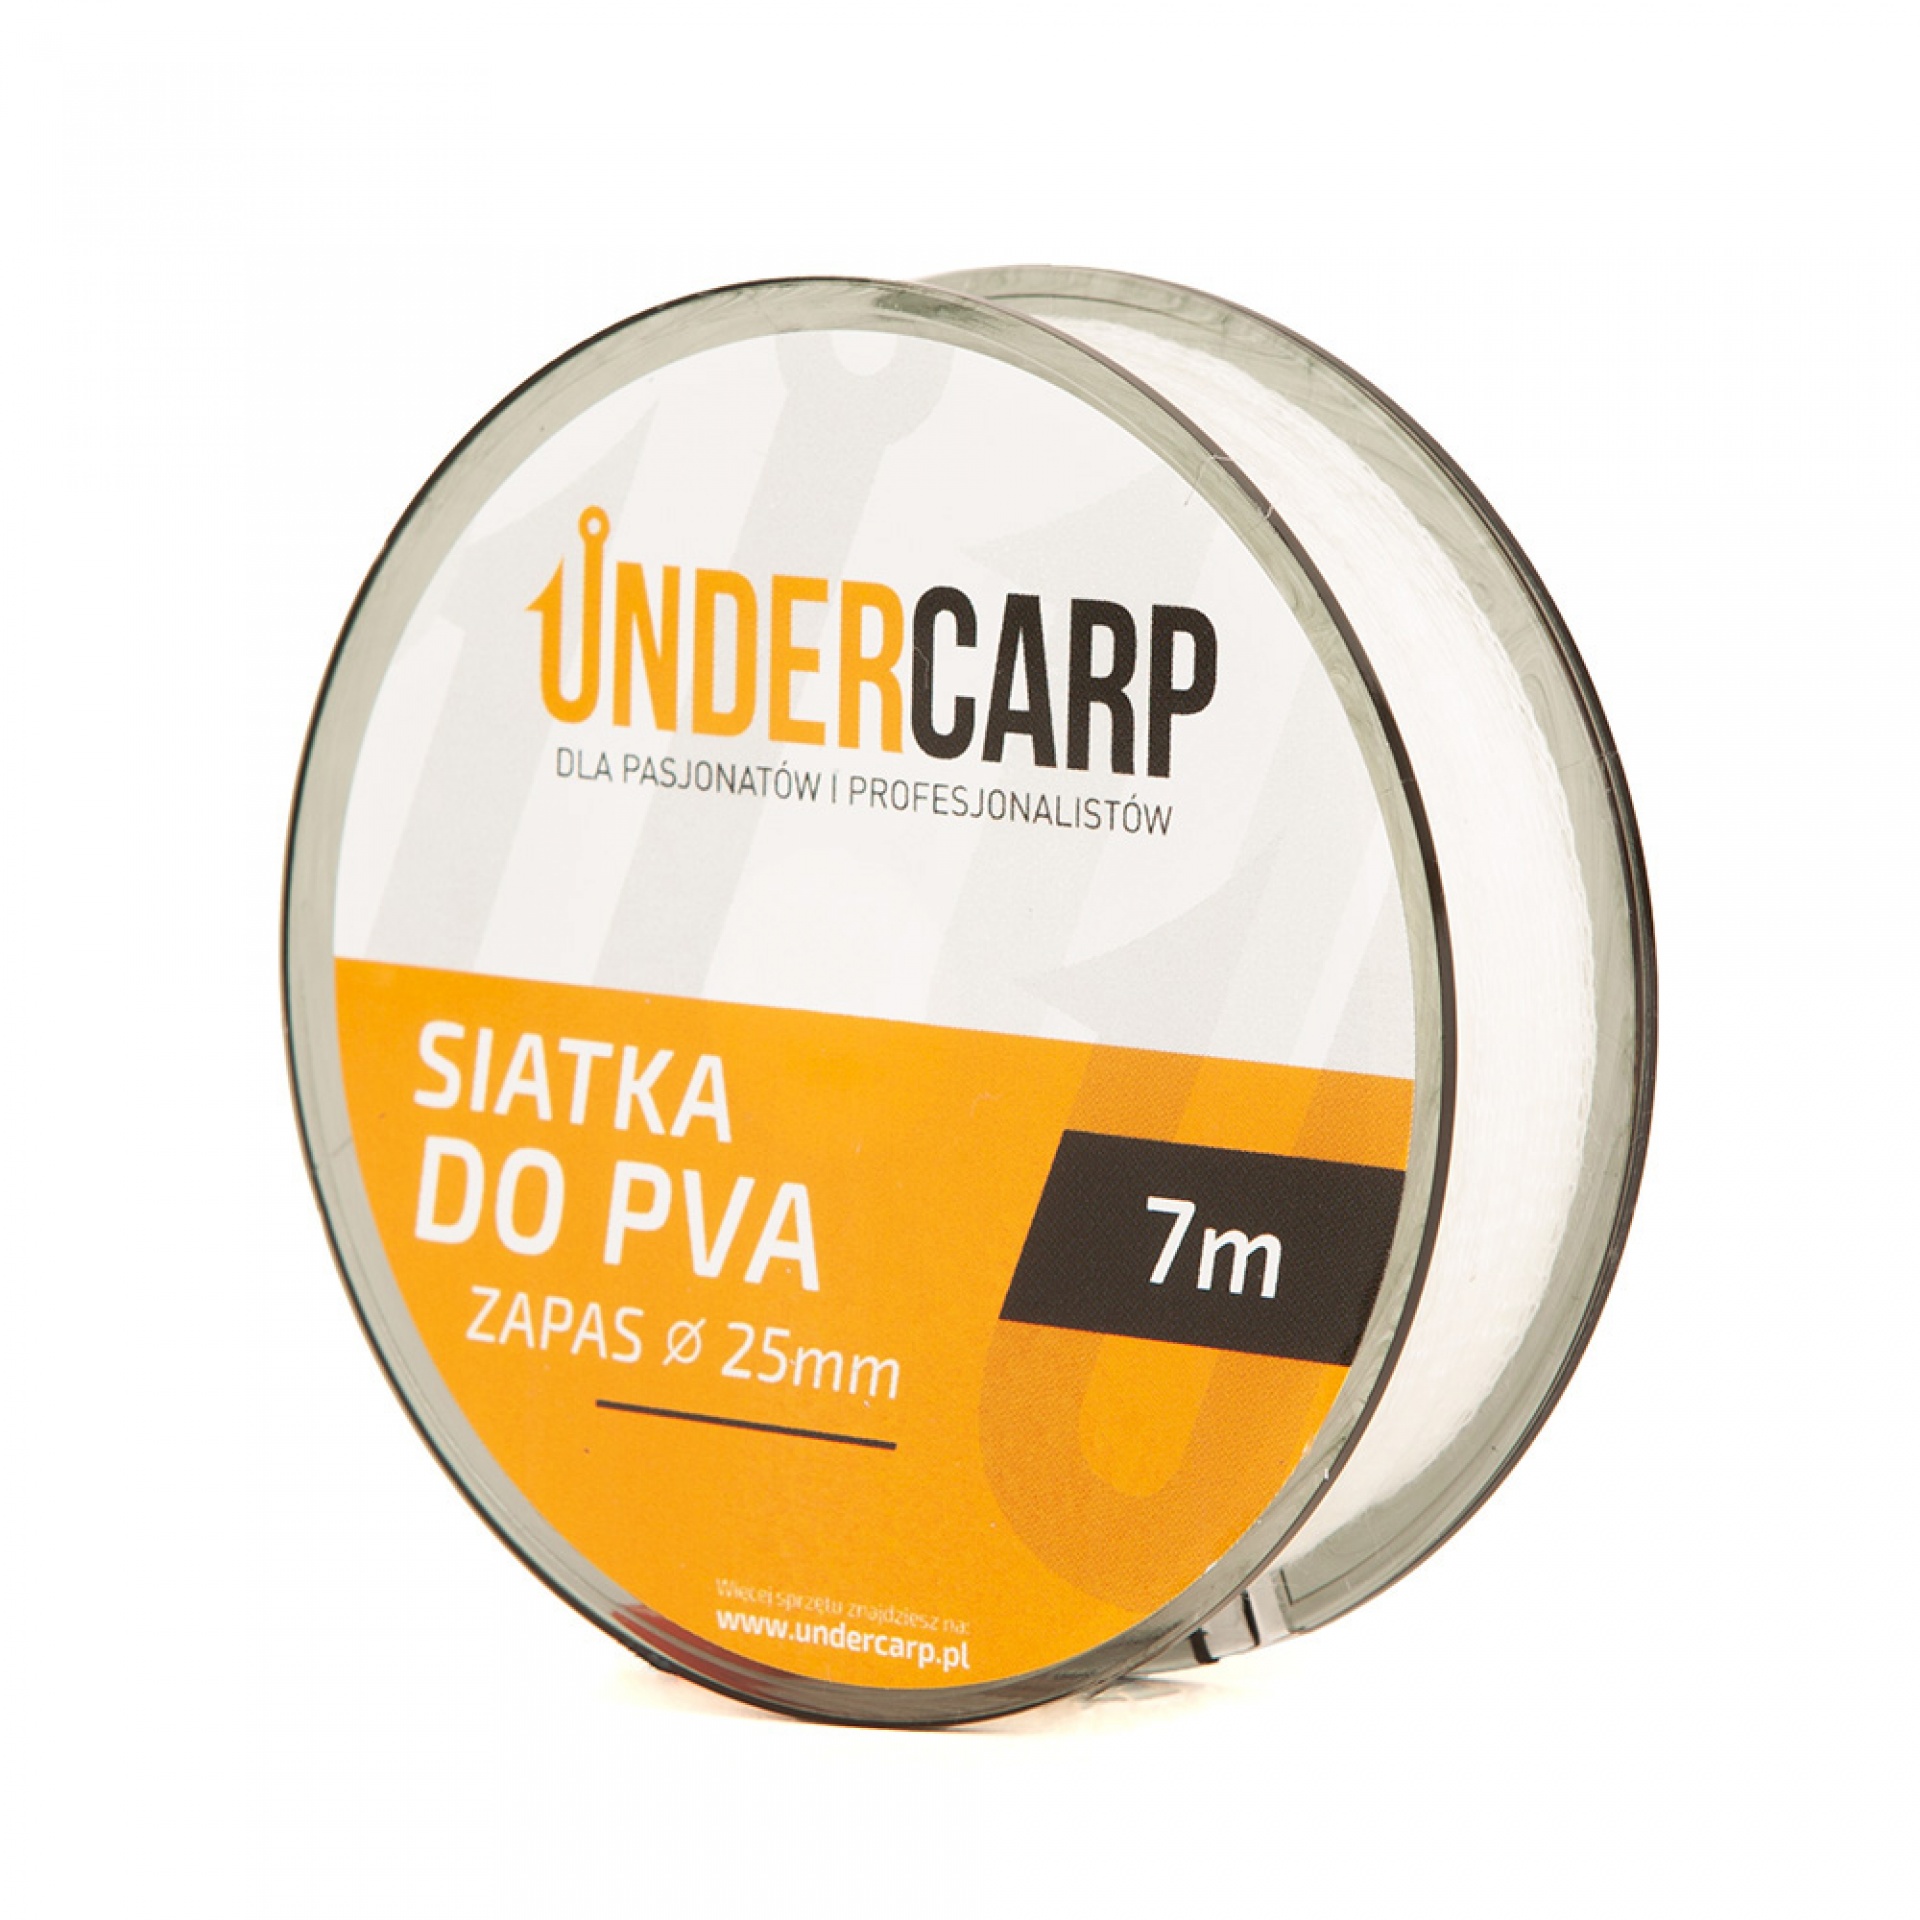 UnderCarp - Filet de Rechange PVA 25mm 7m